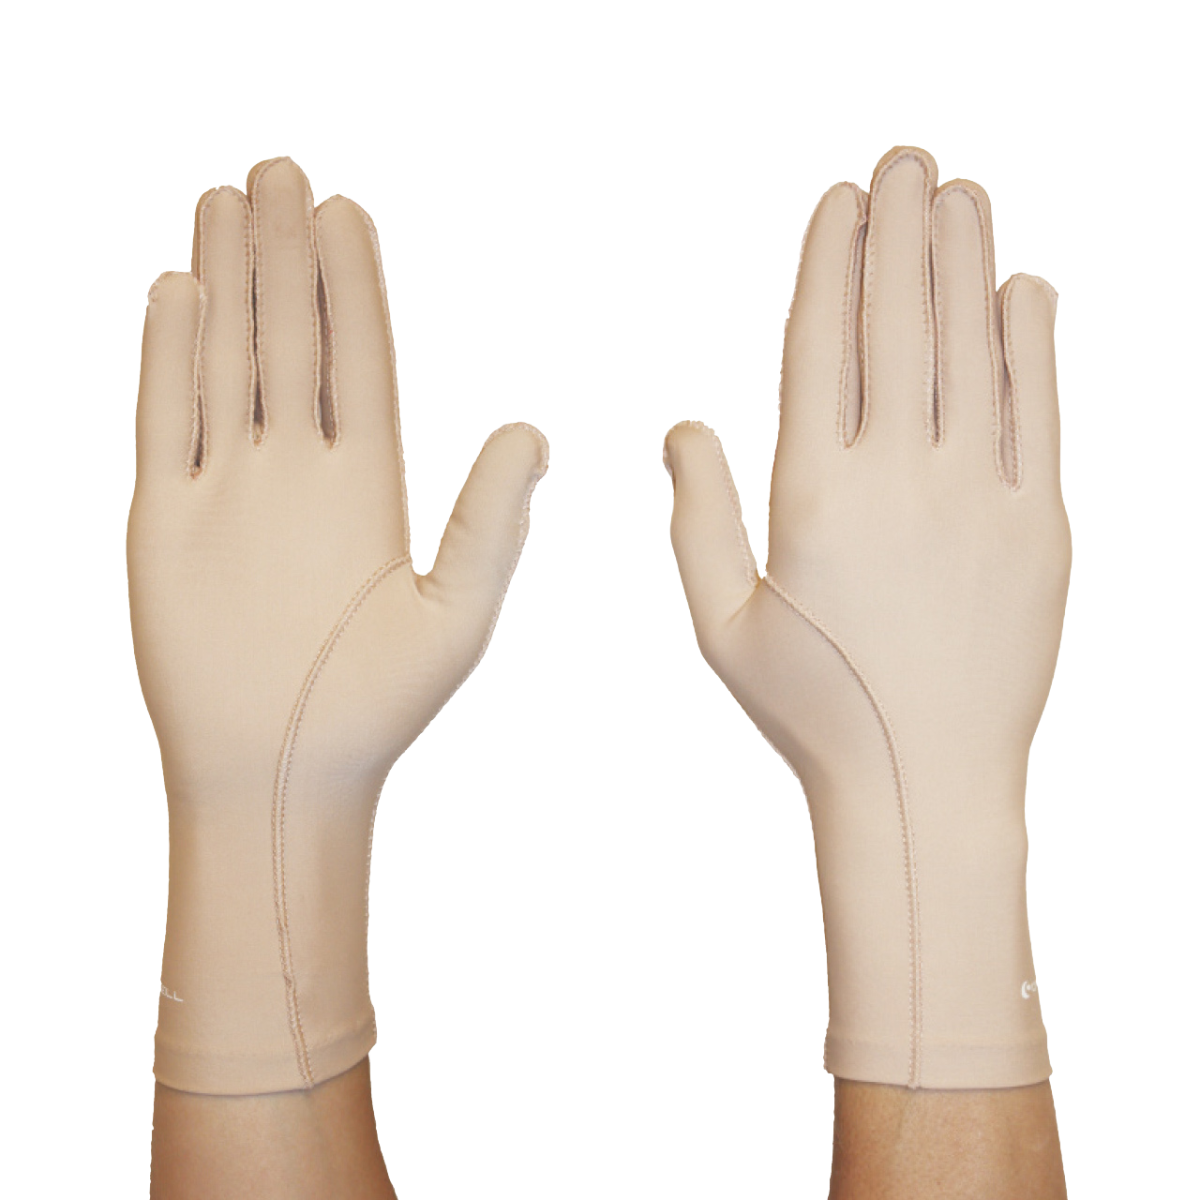 Kompresní rukavice CATELL EDEMA Light béžová L, C7150*L